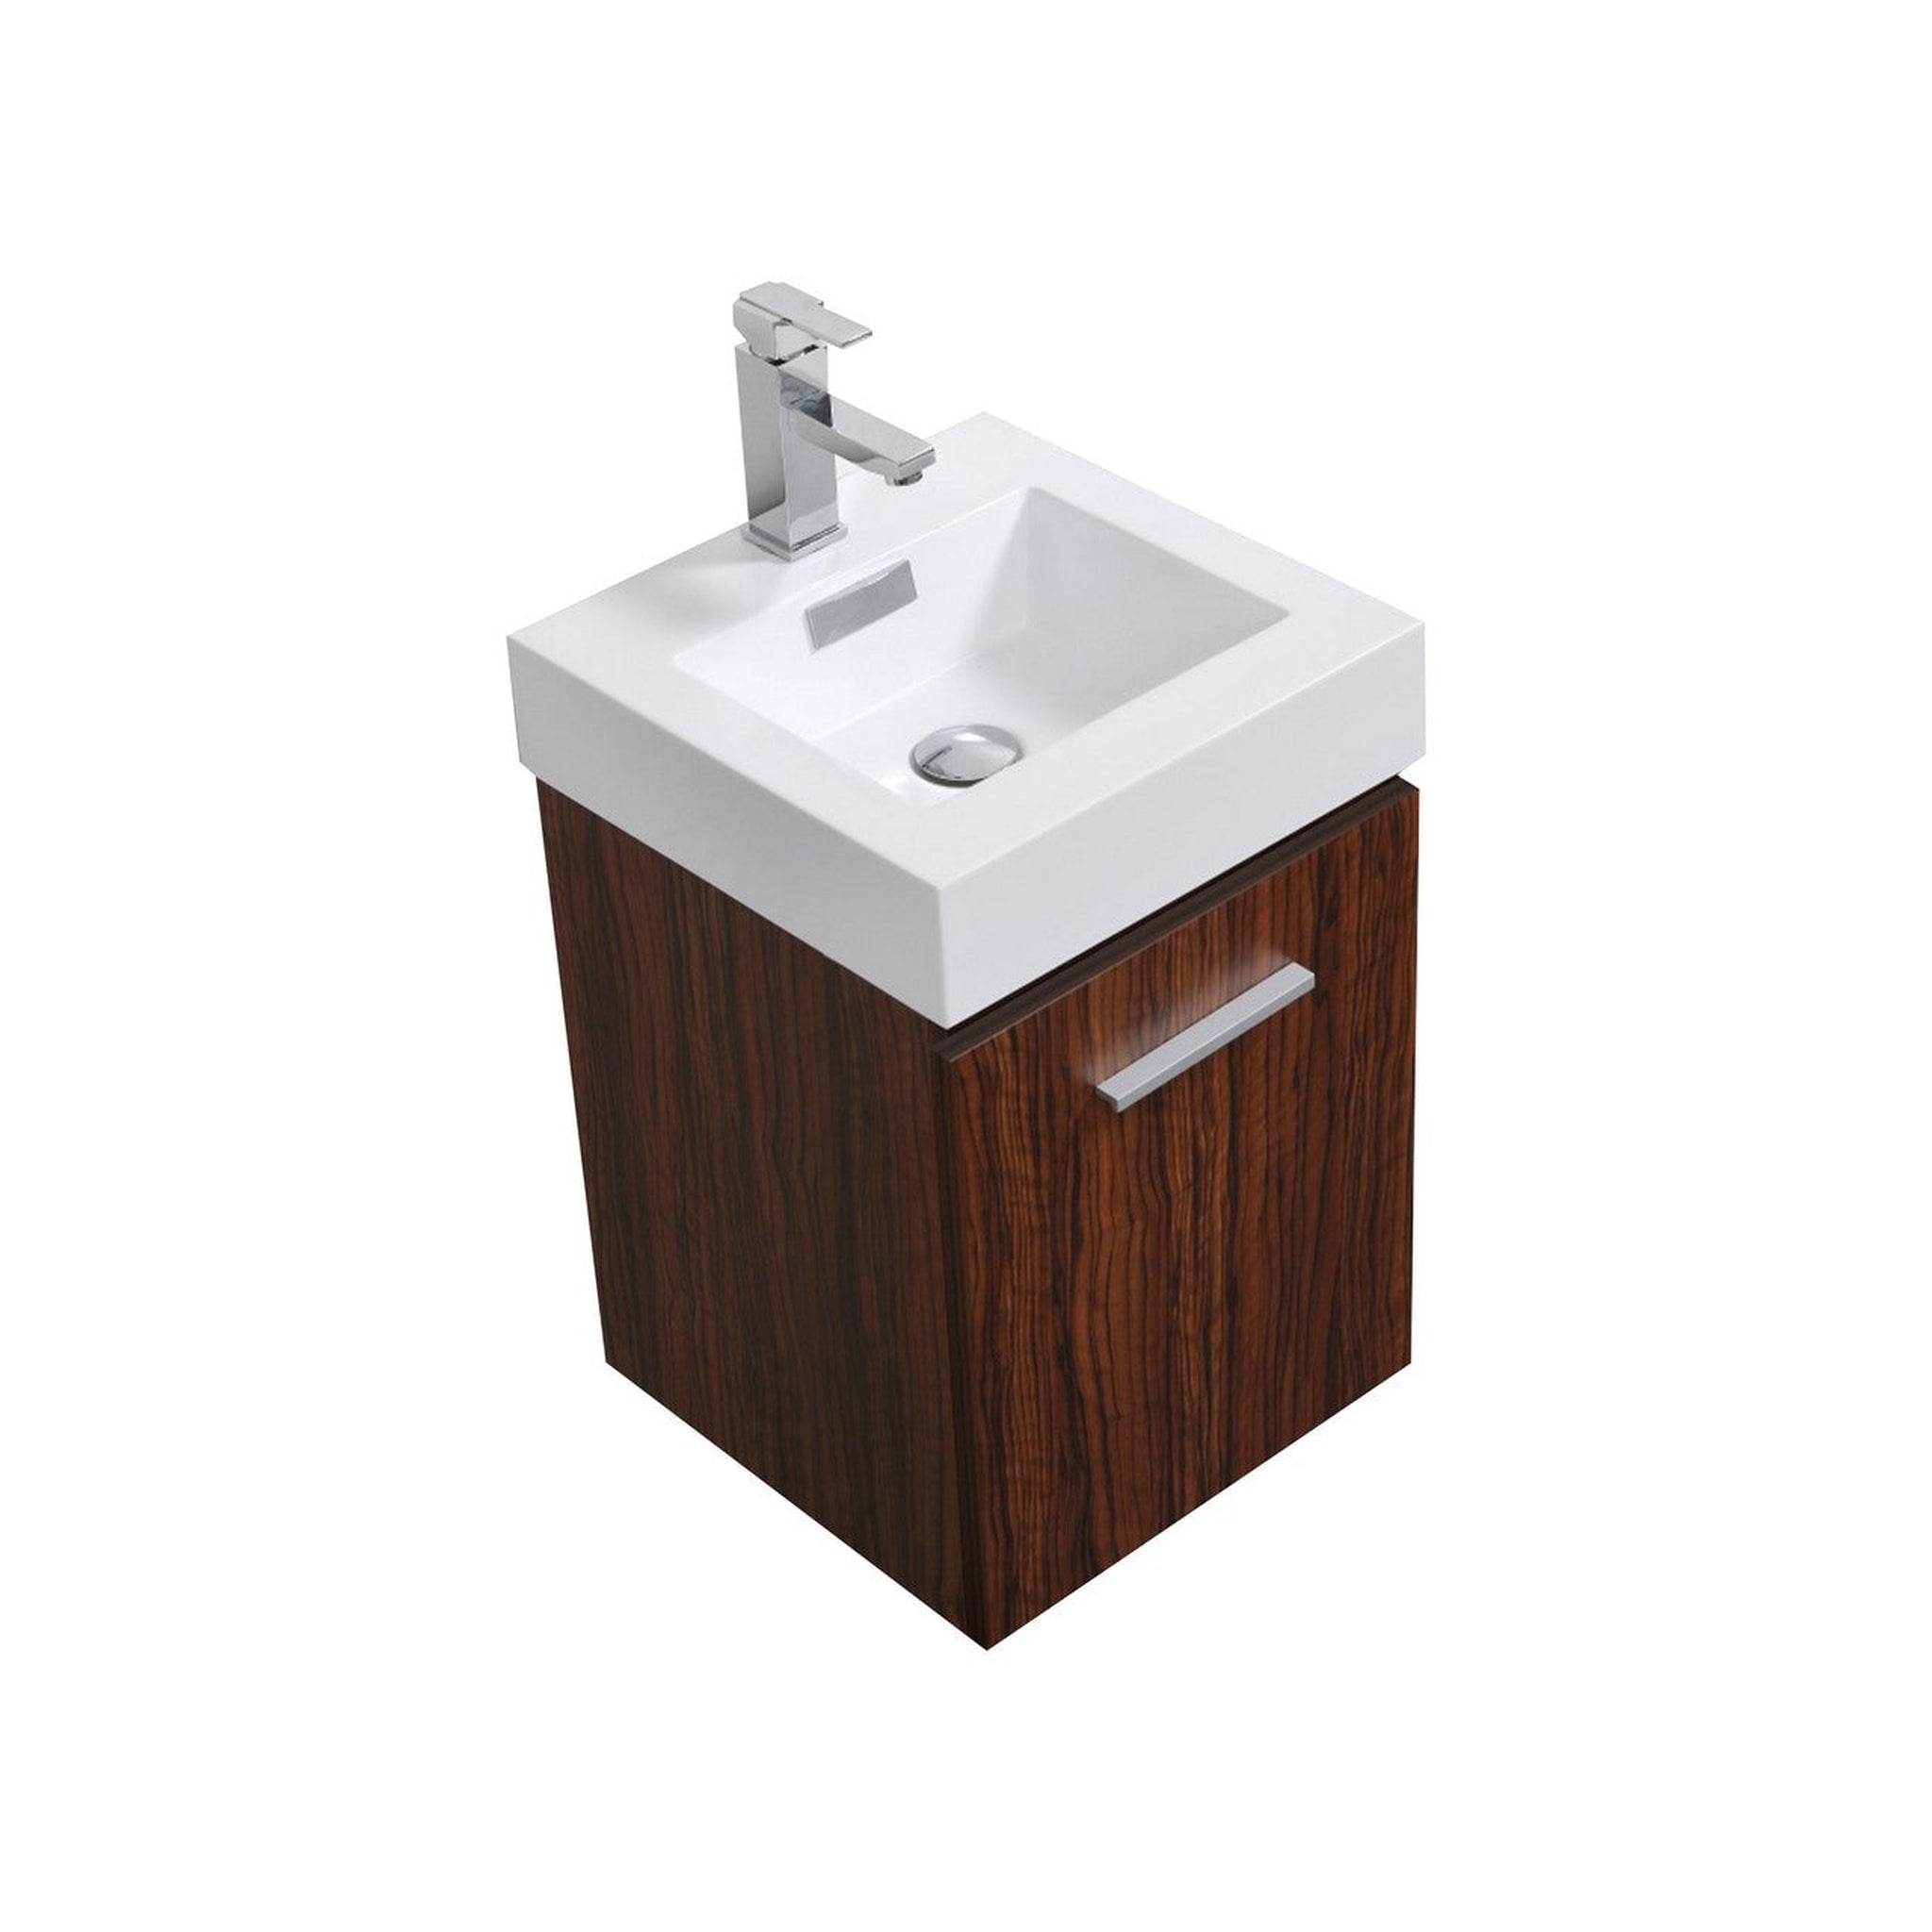 KubeBath, KubeBath Bliss 16" Walnut Wall-Mounted Modern Bathroom Vanity With Single Integrated Acrylic Sink With Overflow